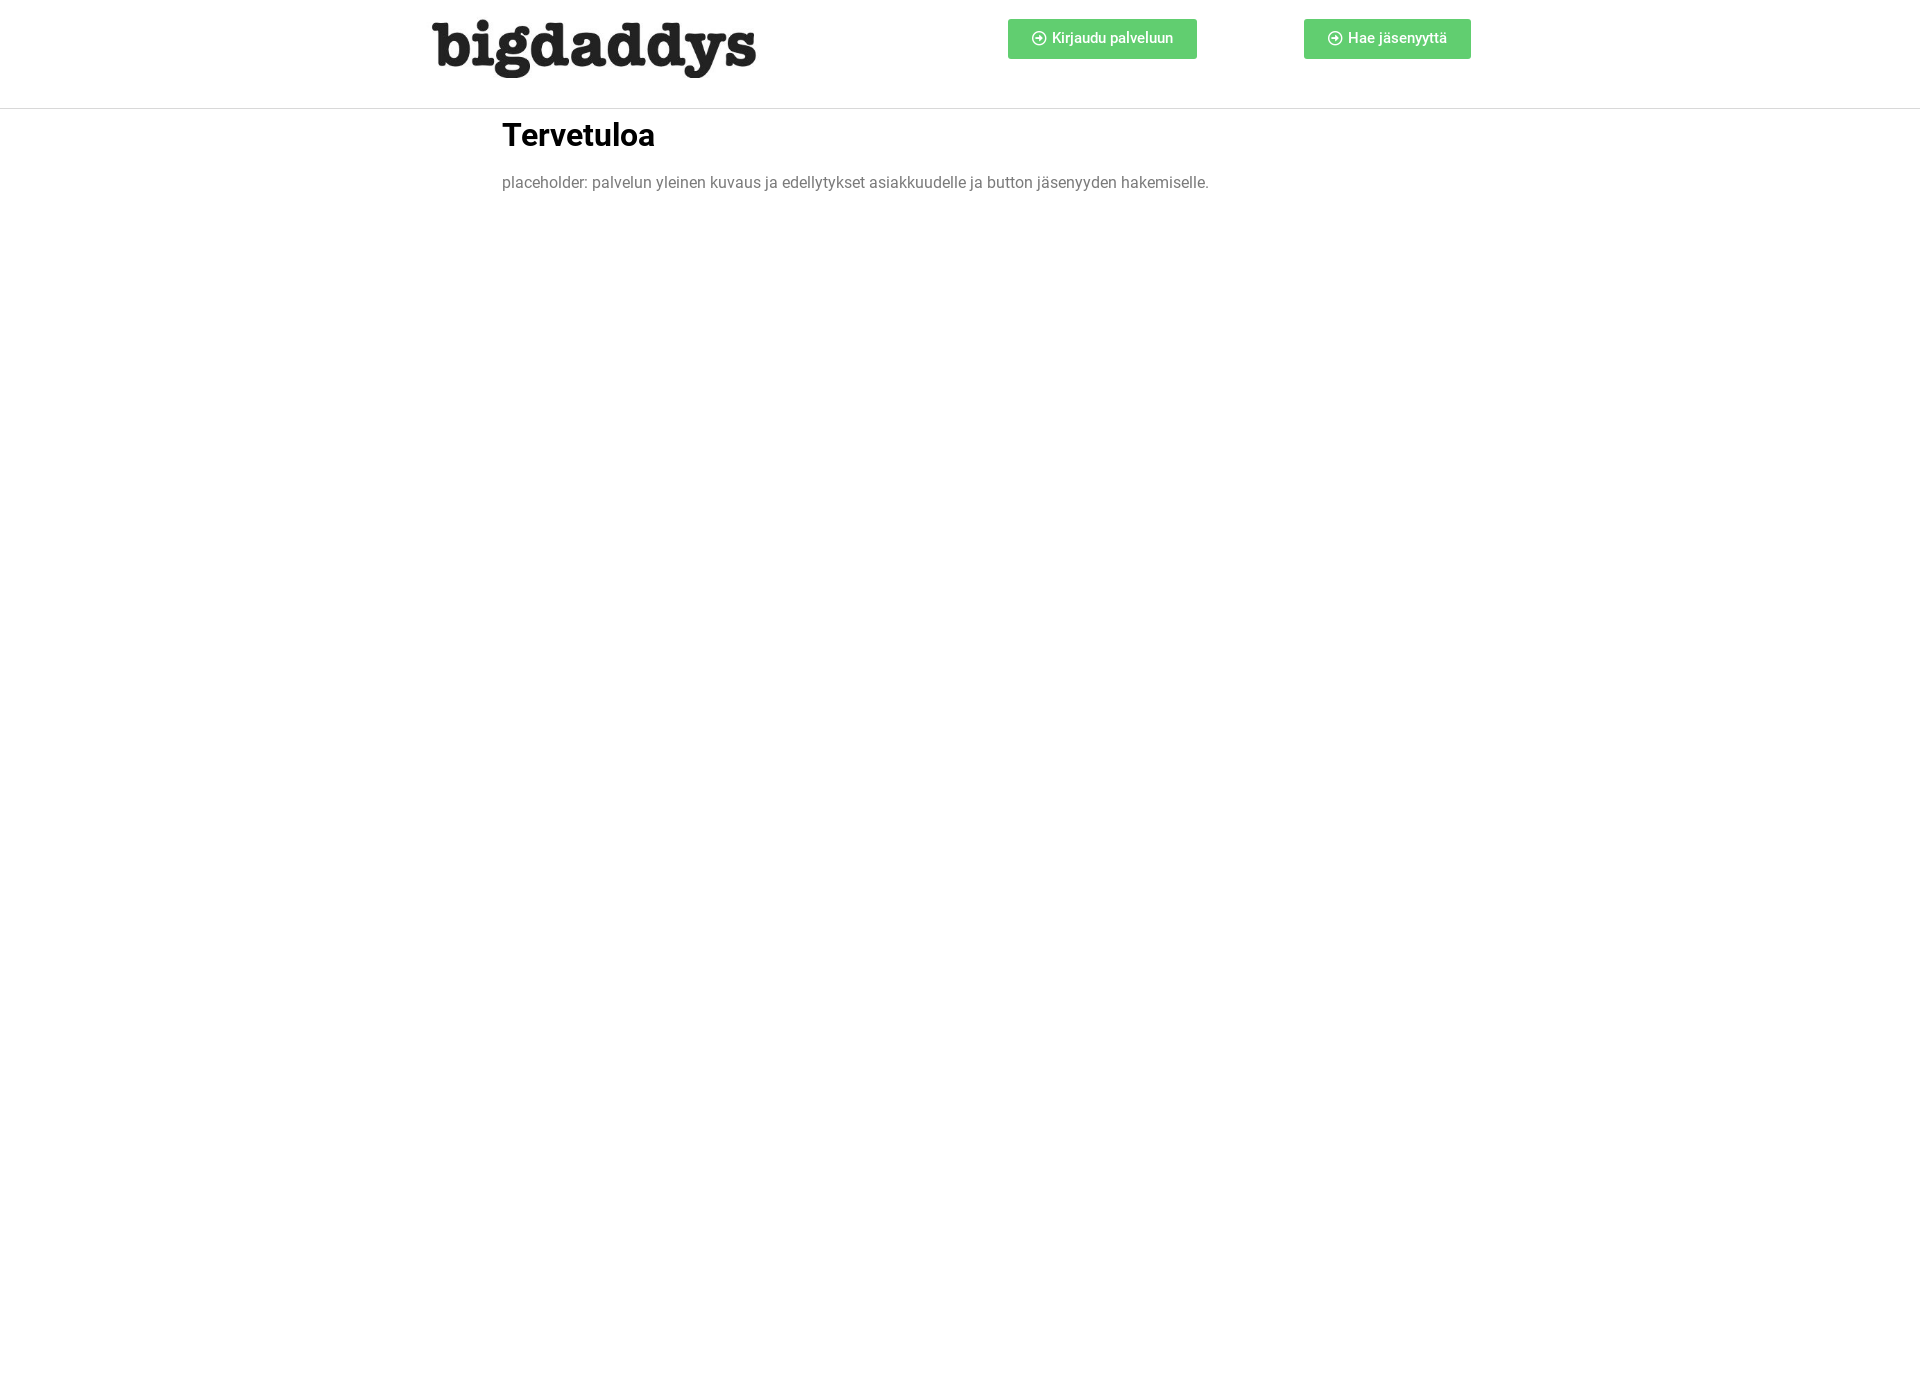 Skärmdump för bigdaddys.fi